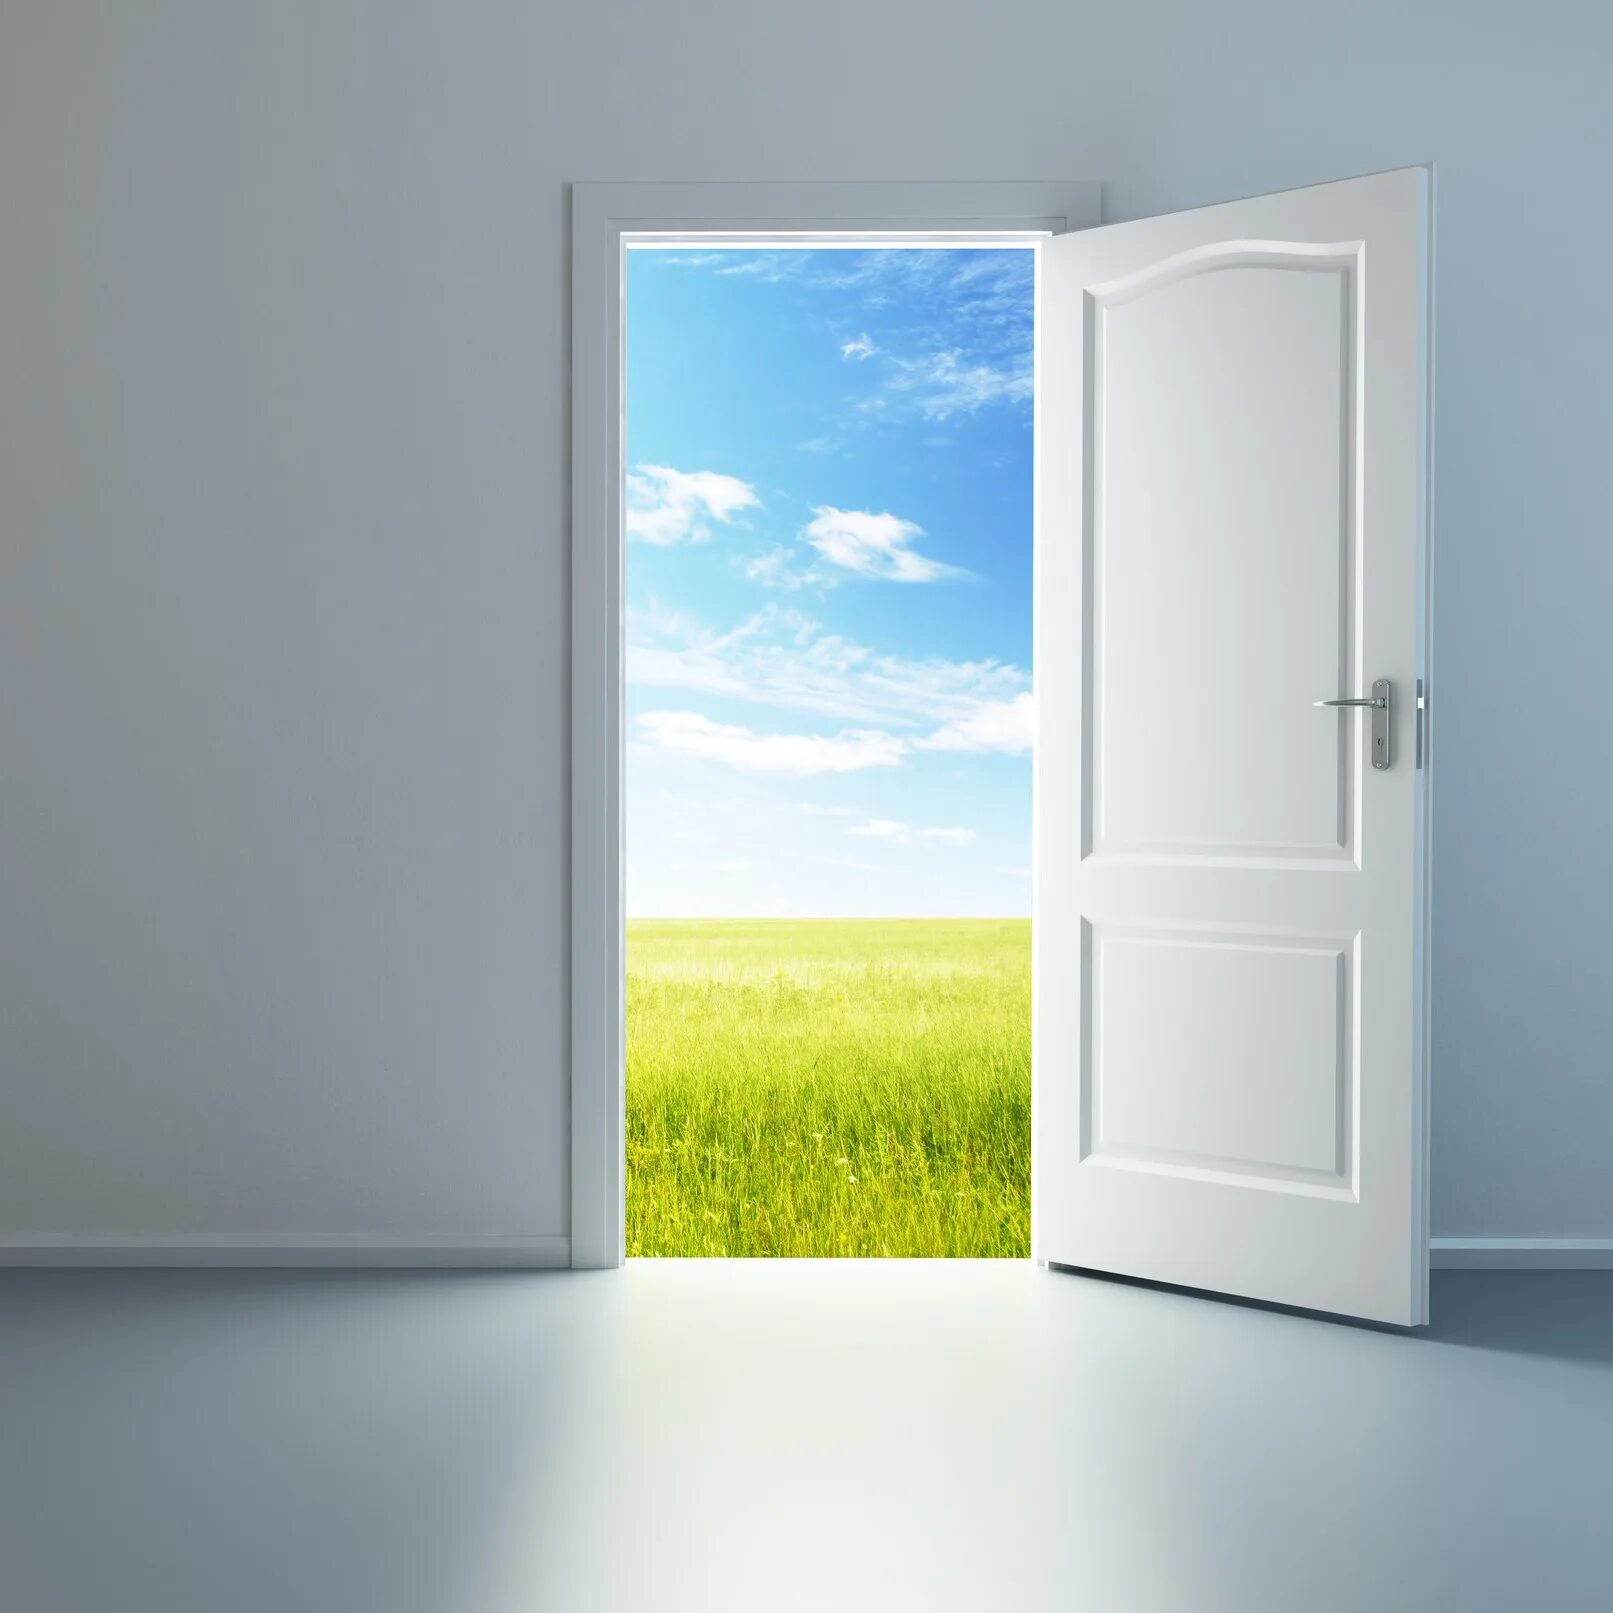 Открылась дверь слова. Открытая дверь. Приоткрытая дверь. Дверь открыта. Двери в прекрасное будущее.